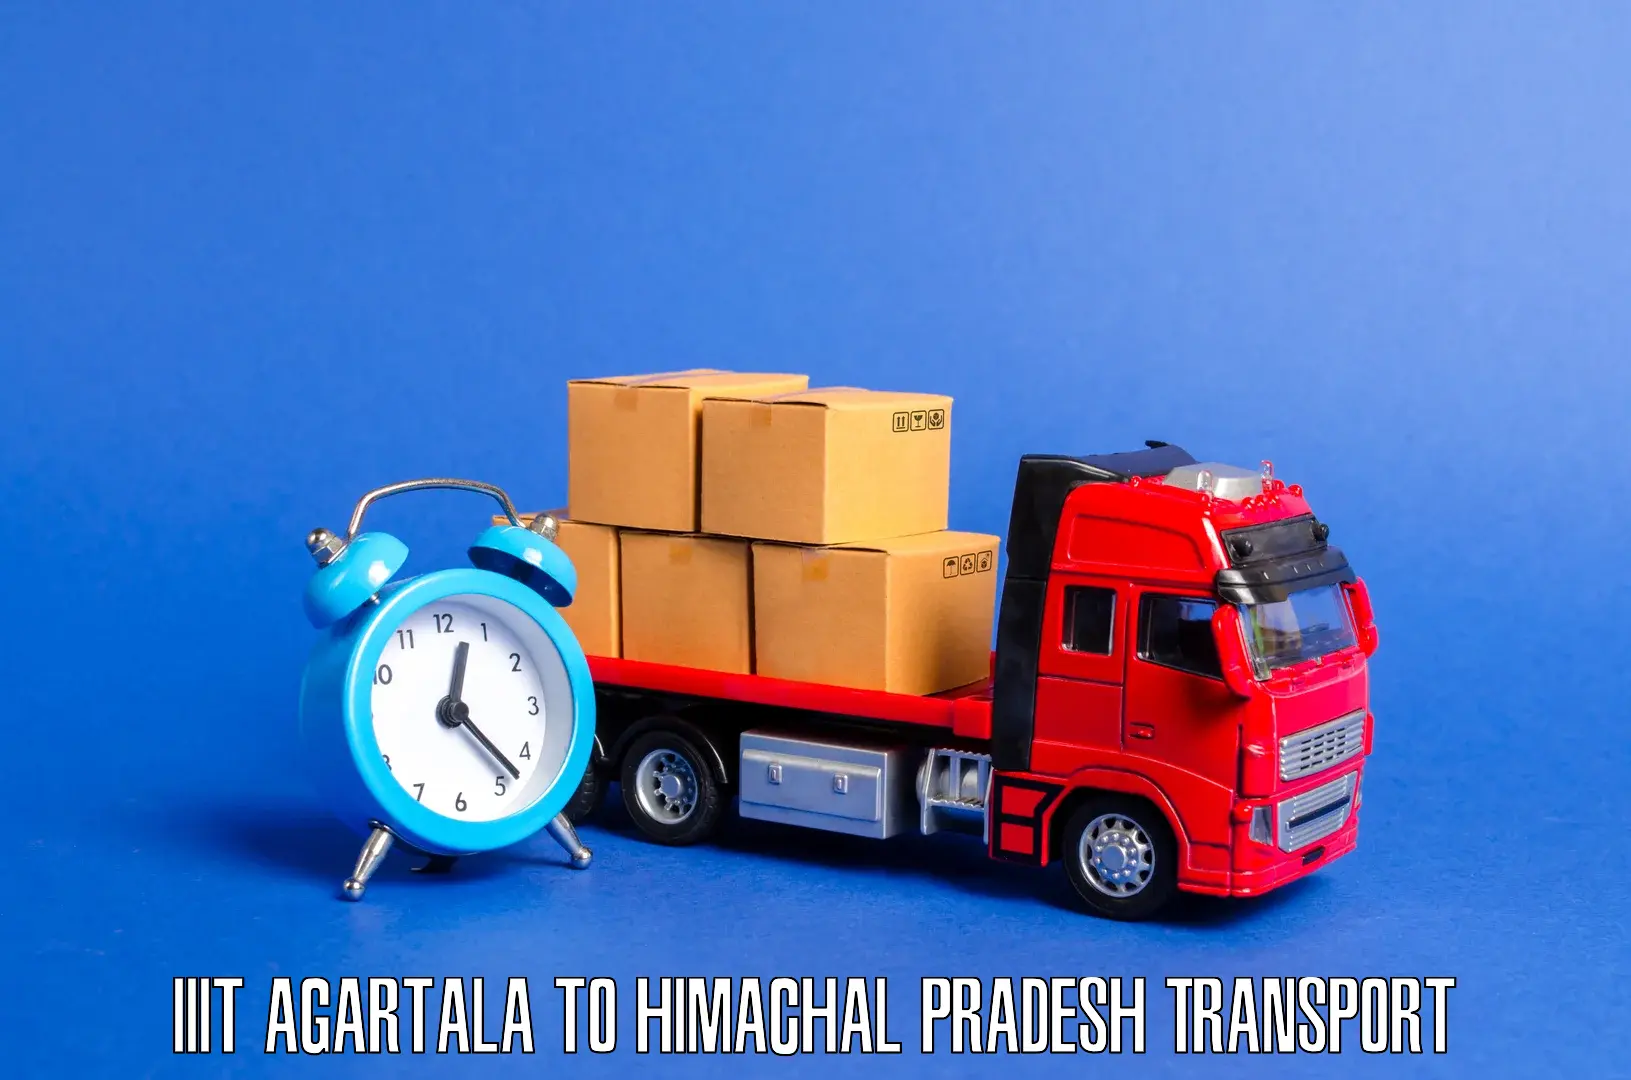 Vehicle transport services IIIT Agartala to Rakkar